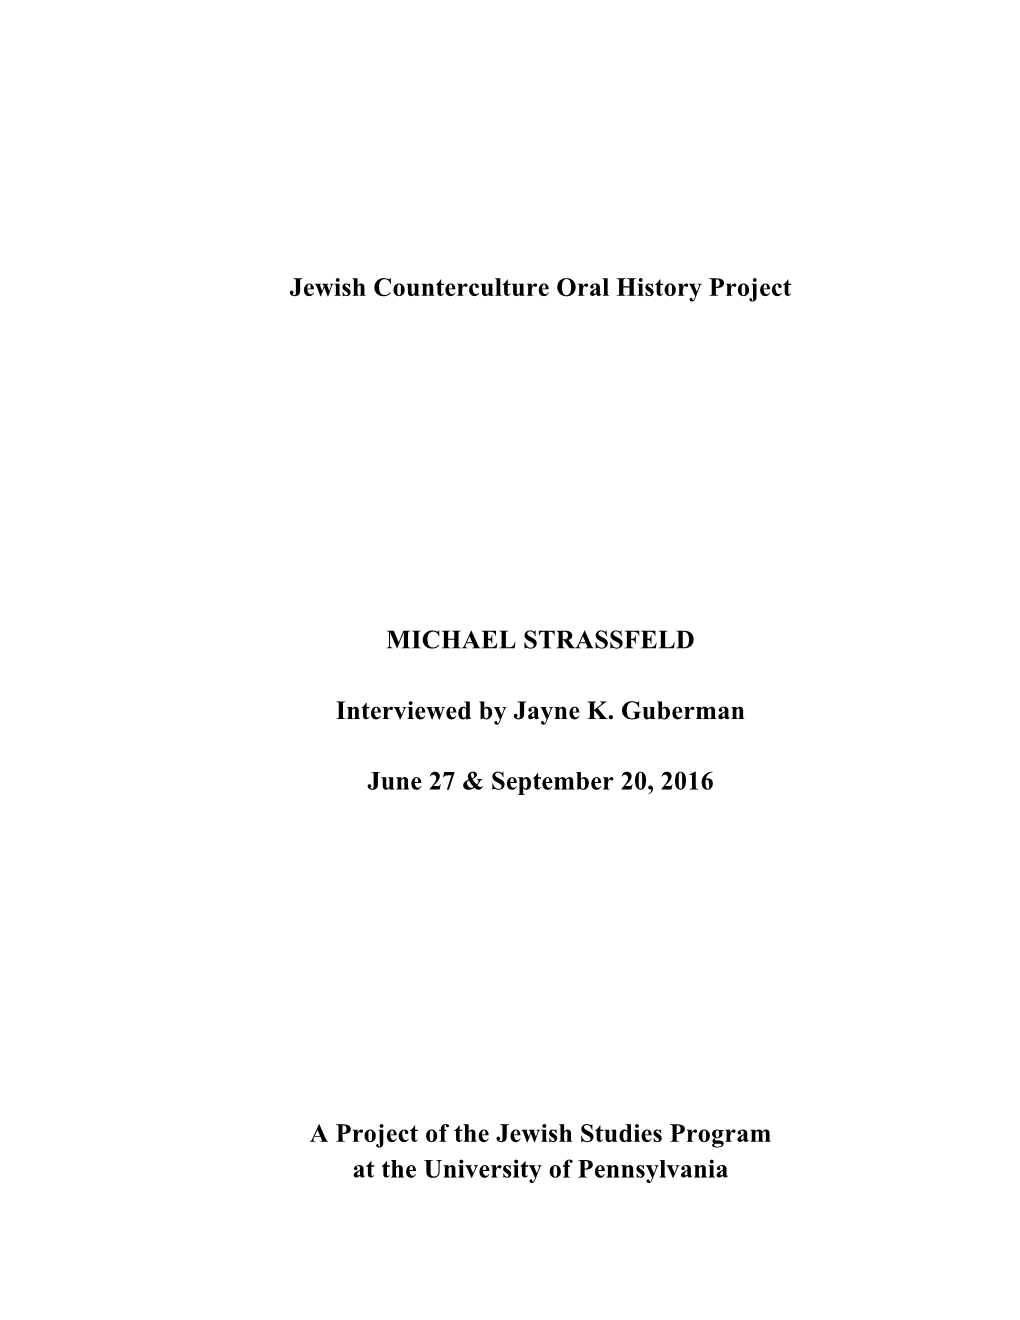 Jewish Counterculture Oral History Project MICHAEL STRASSFELD